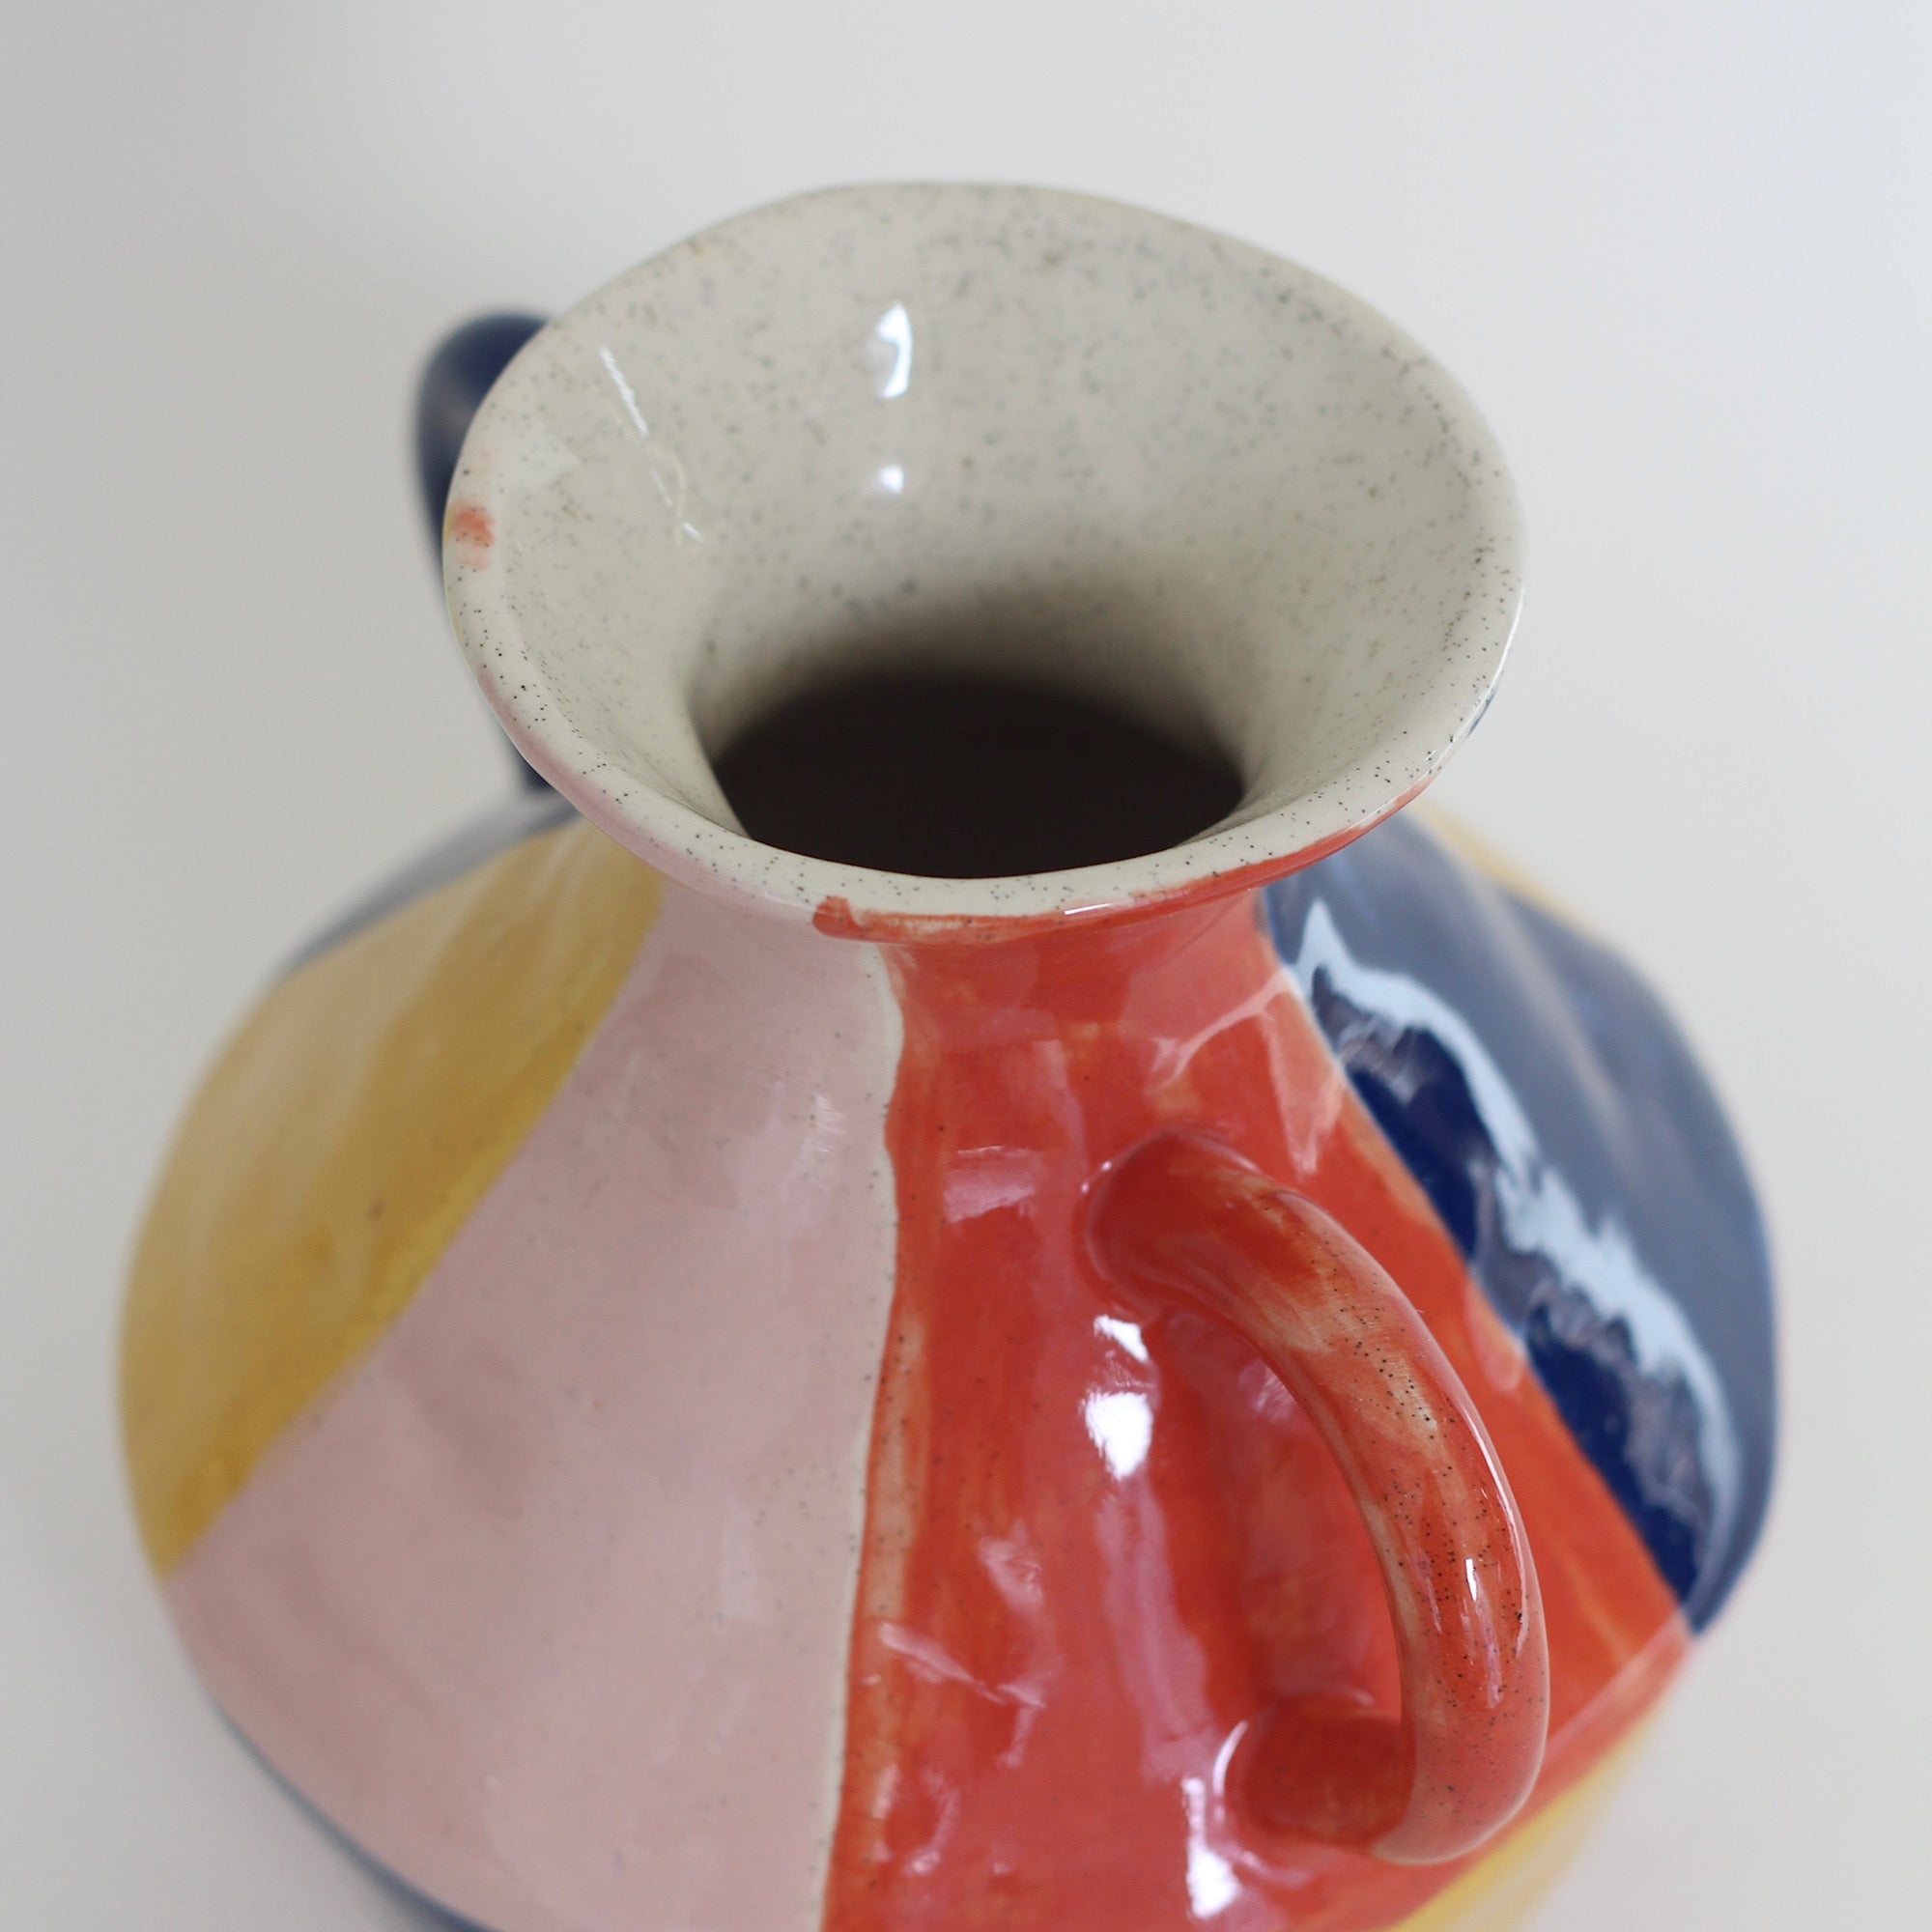 Classic Vase, Colour Blocked